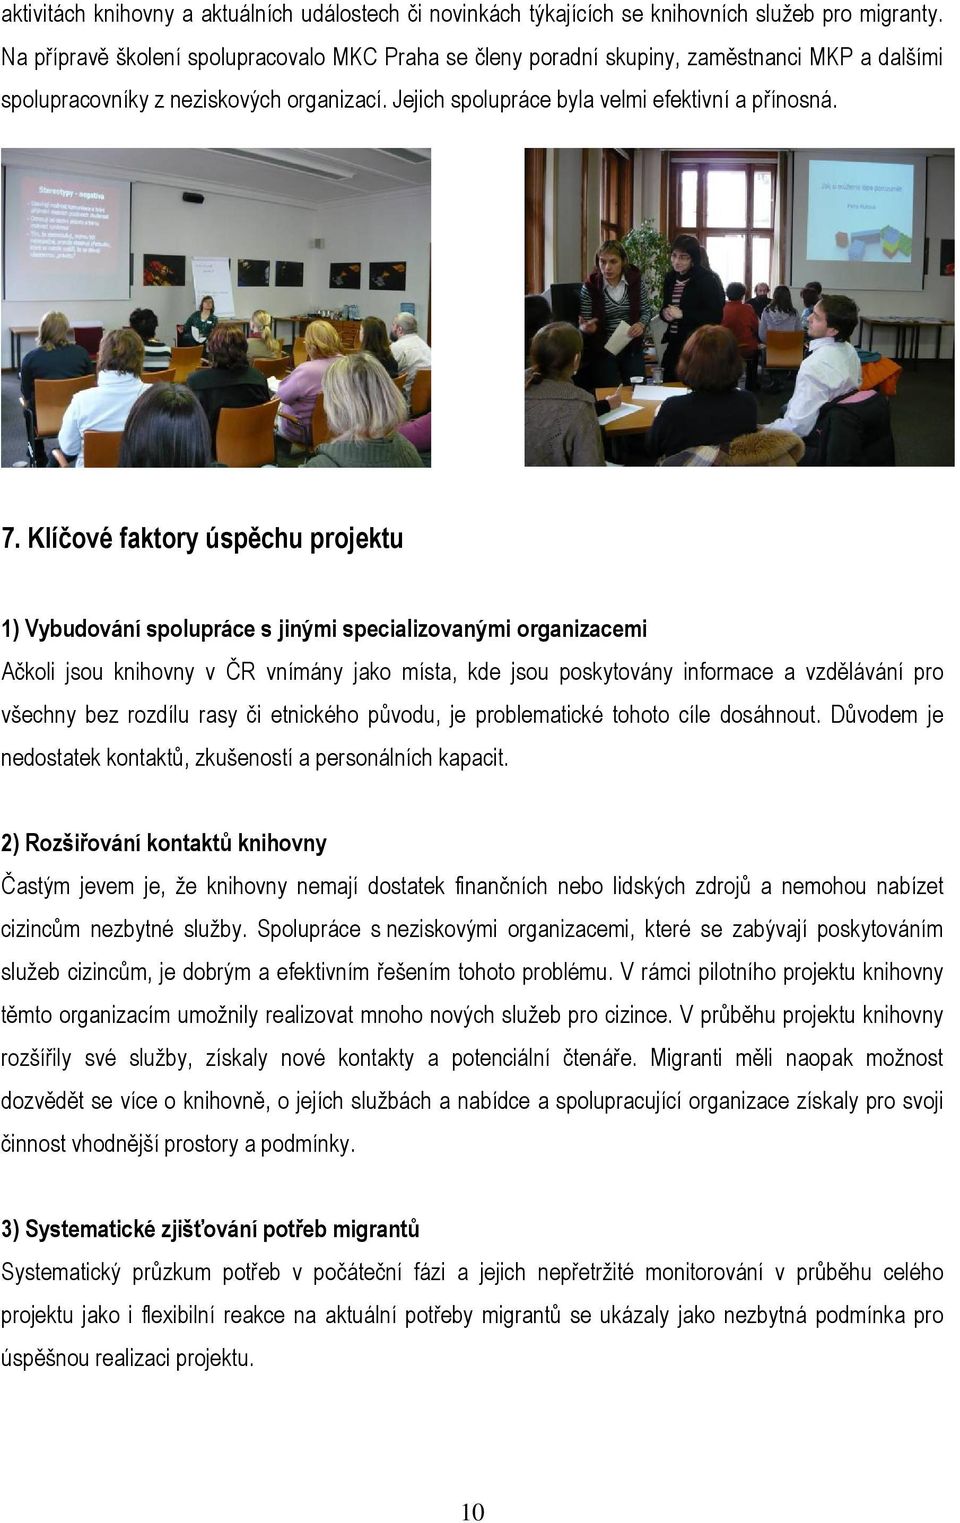 Klíčové faktory úspěchu projektu 1) Vybudování spolupráce s jinými specializovanými organizacemi Ačkoli jsou knihovny v ČR vnímány jako místa, kde jsou poskytovány informace a vzdělávání pro všechny